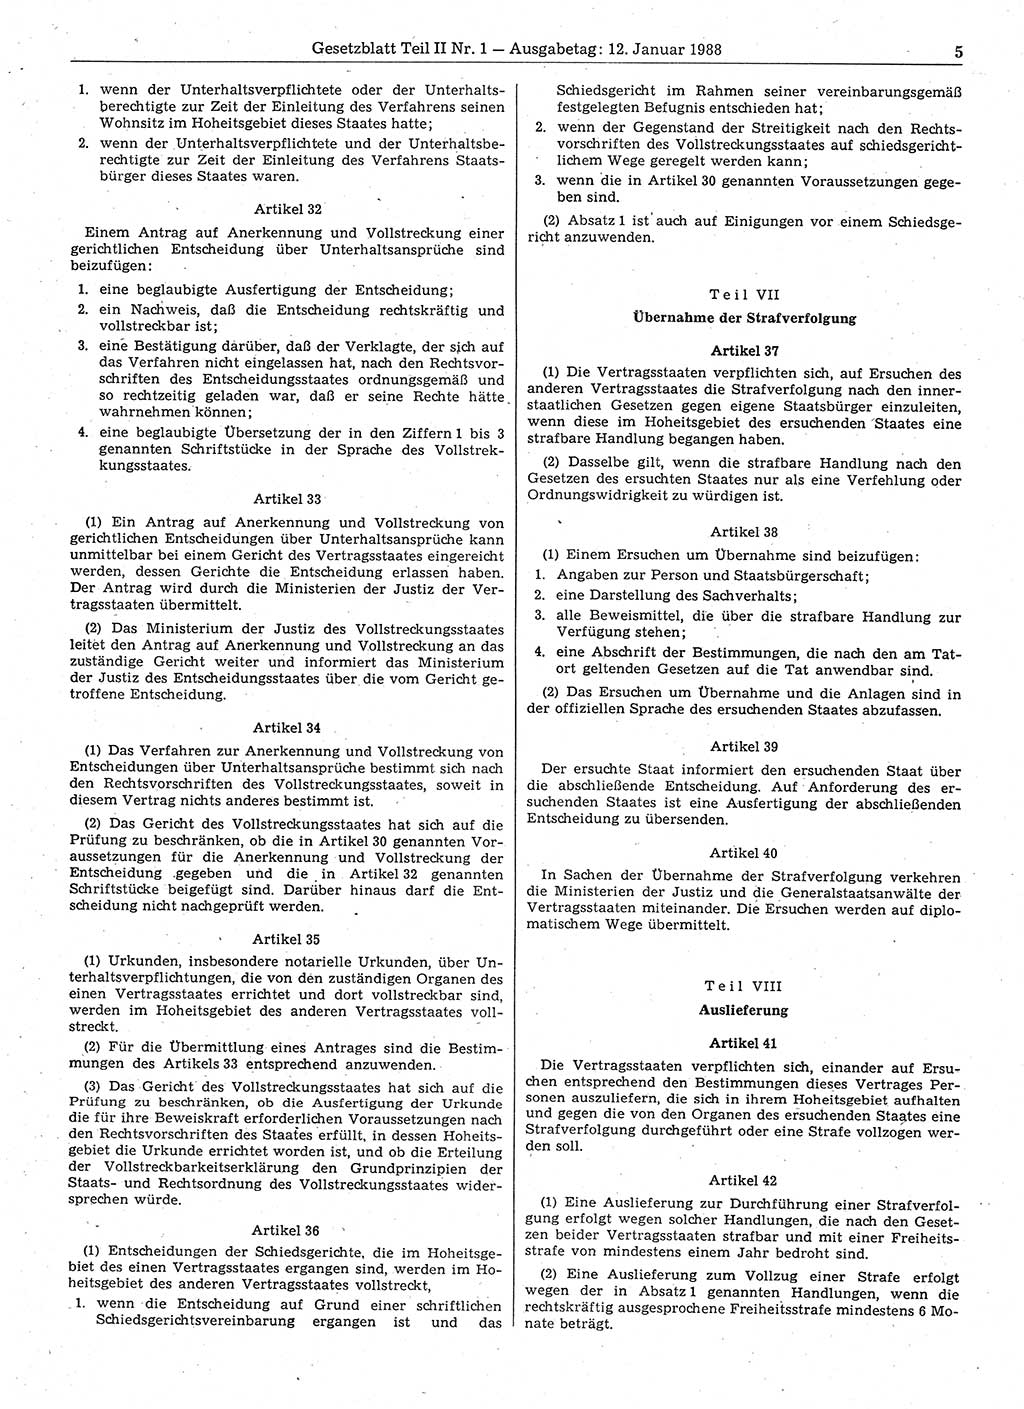 Gesetzblatt (GBl.) der Deutschen Demokratischen Republik (DDR) Teil ⅠⅠ 1988, Seite 5 (GBl. DDR ⅠⅠ 1988, S. 5)